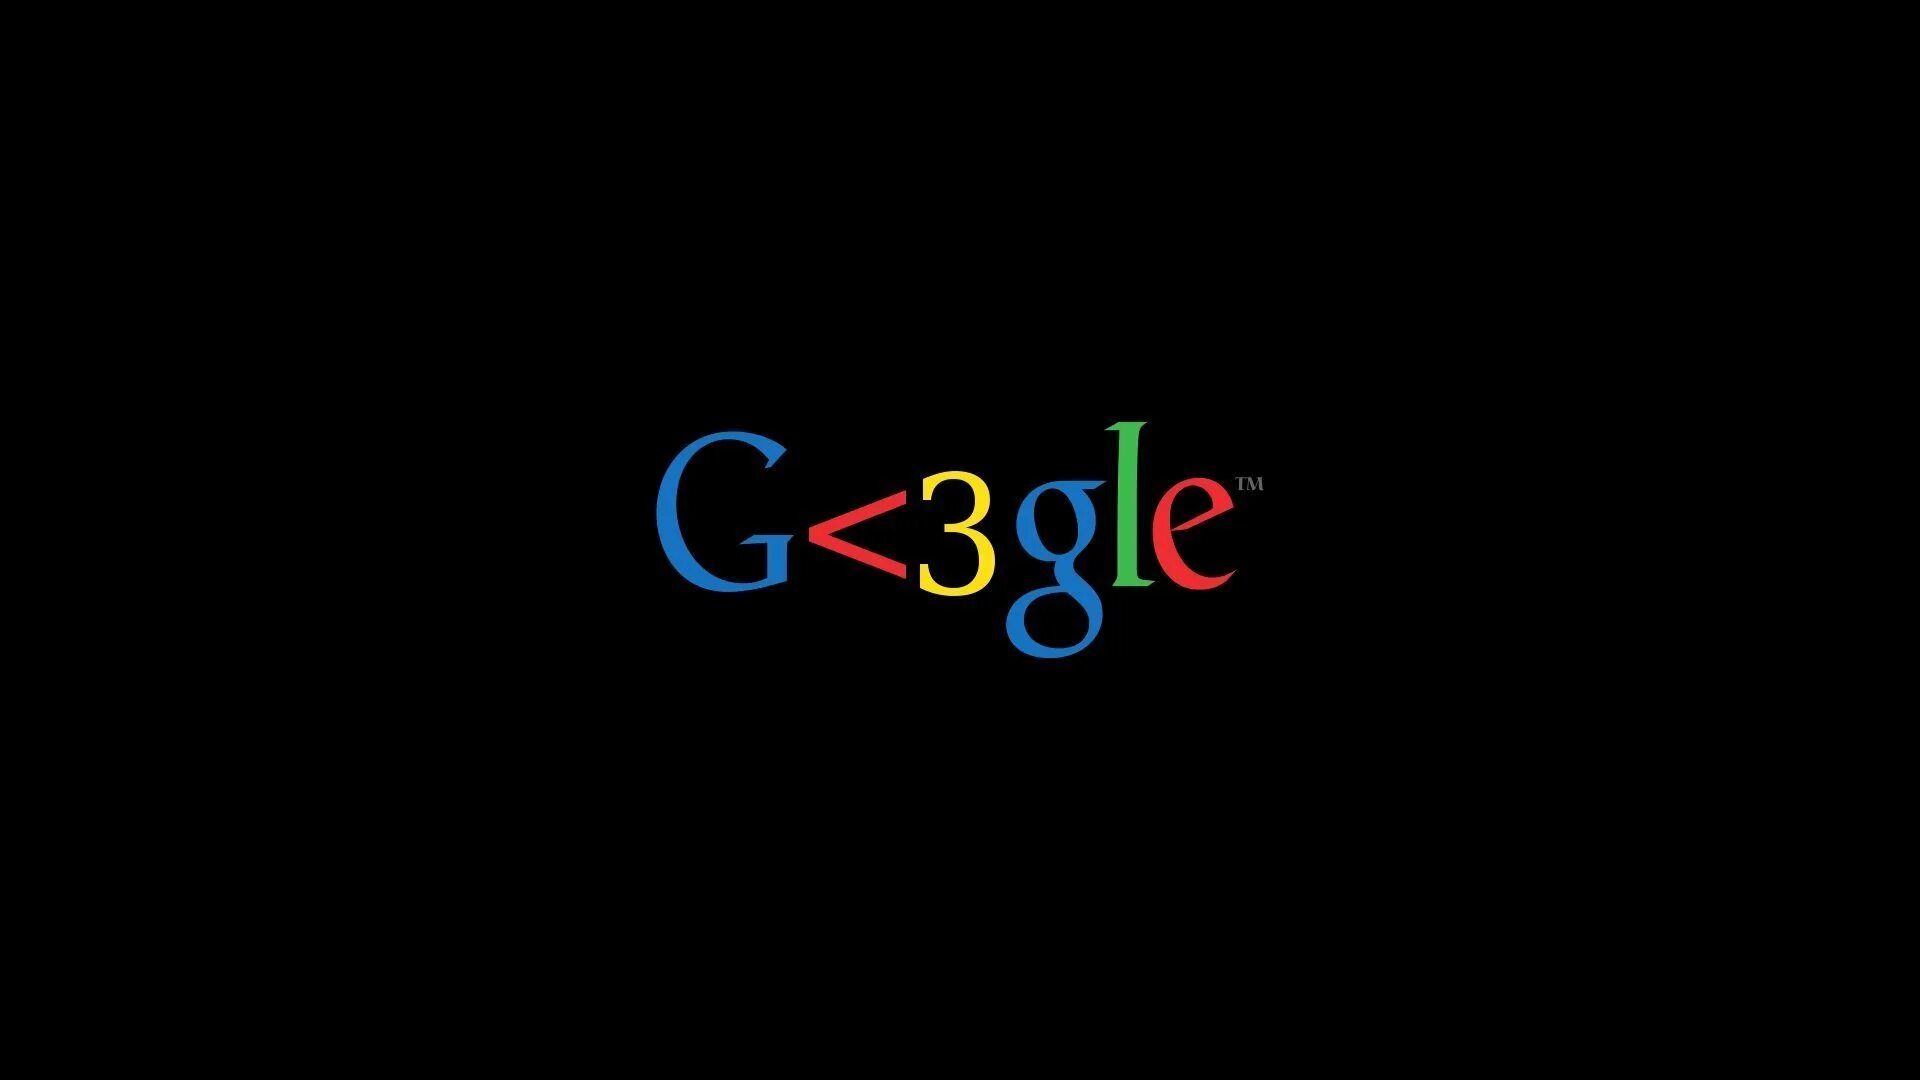 Goo gle. Гугл. Логотип гугл. Логотип гугл на черном фоне. Красивый логотип гугл.